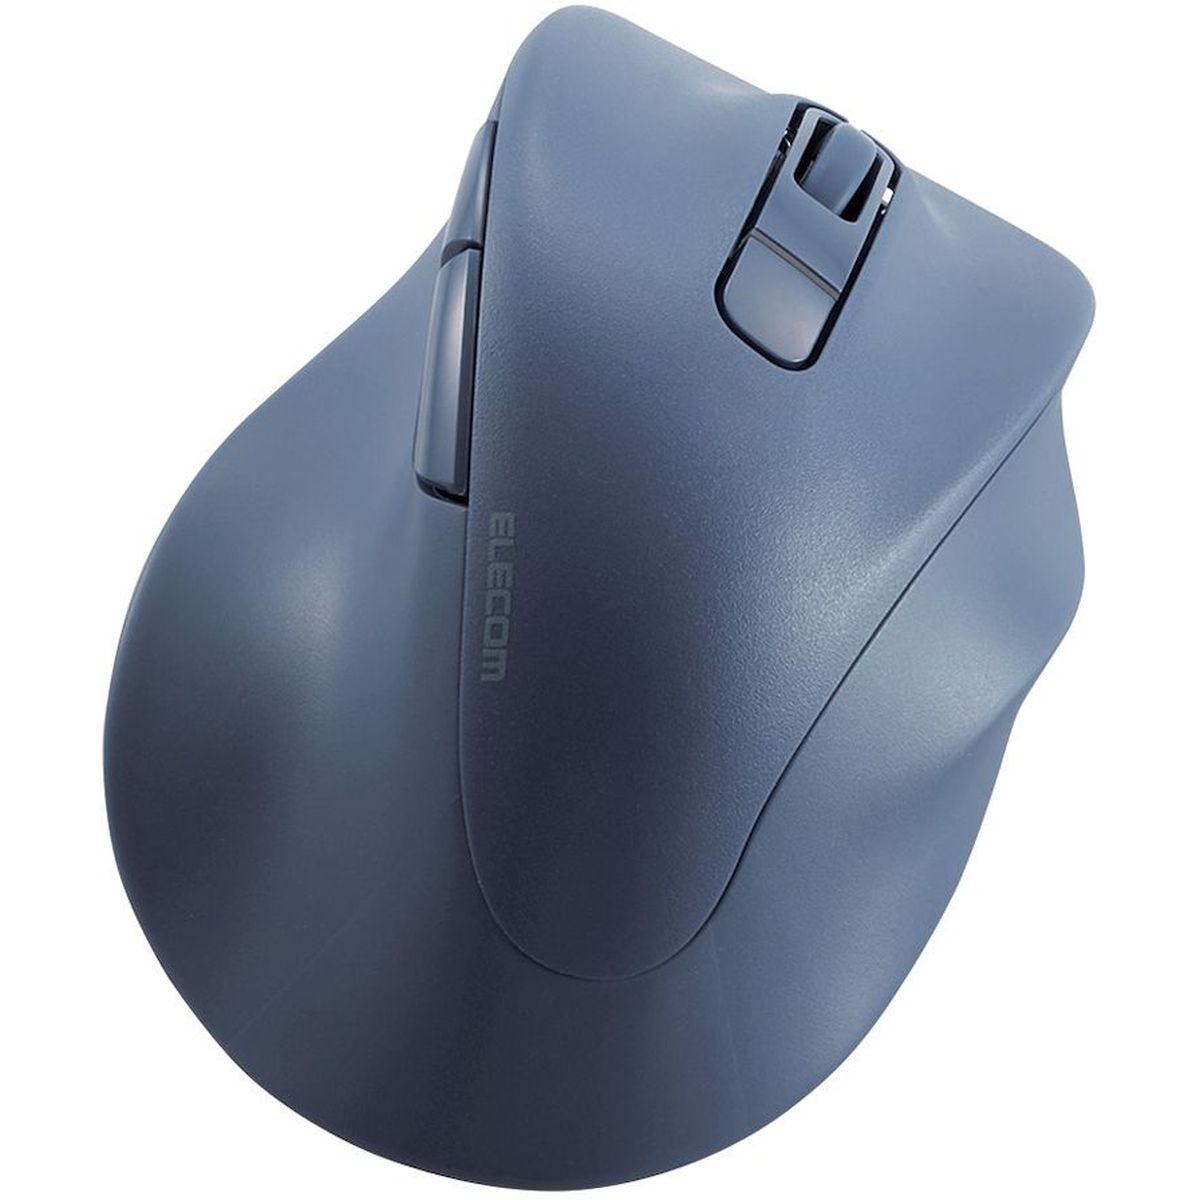 マウス/右手専用/Mサイズ/Bluetooth/5ボタン/ブルー